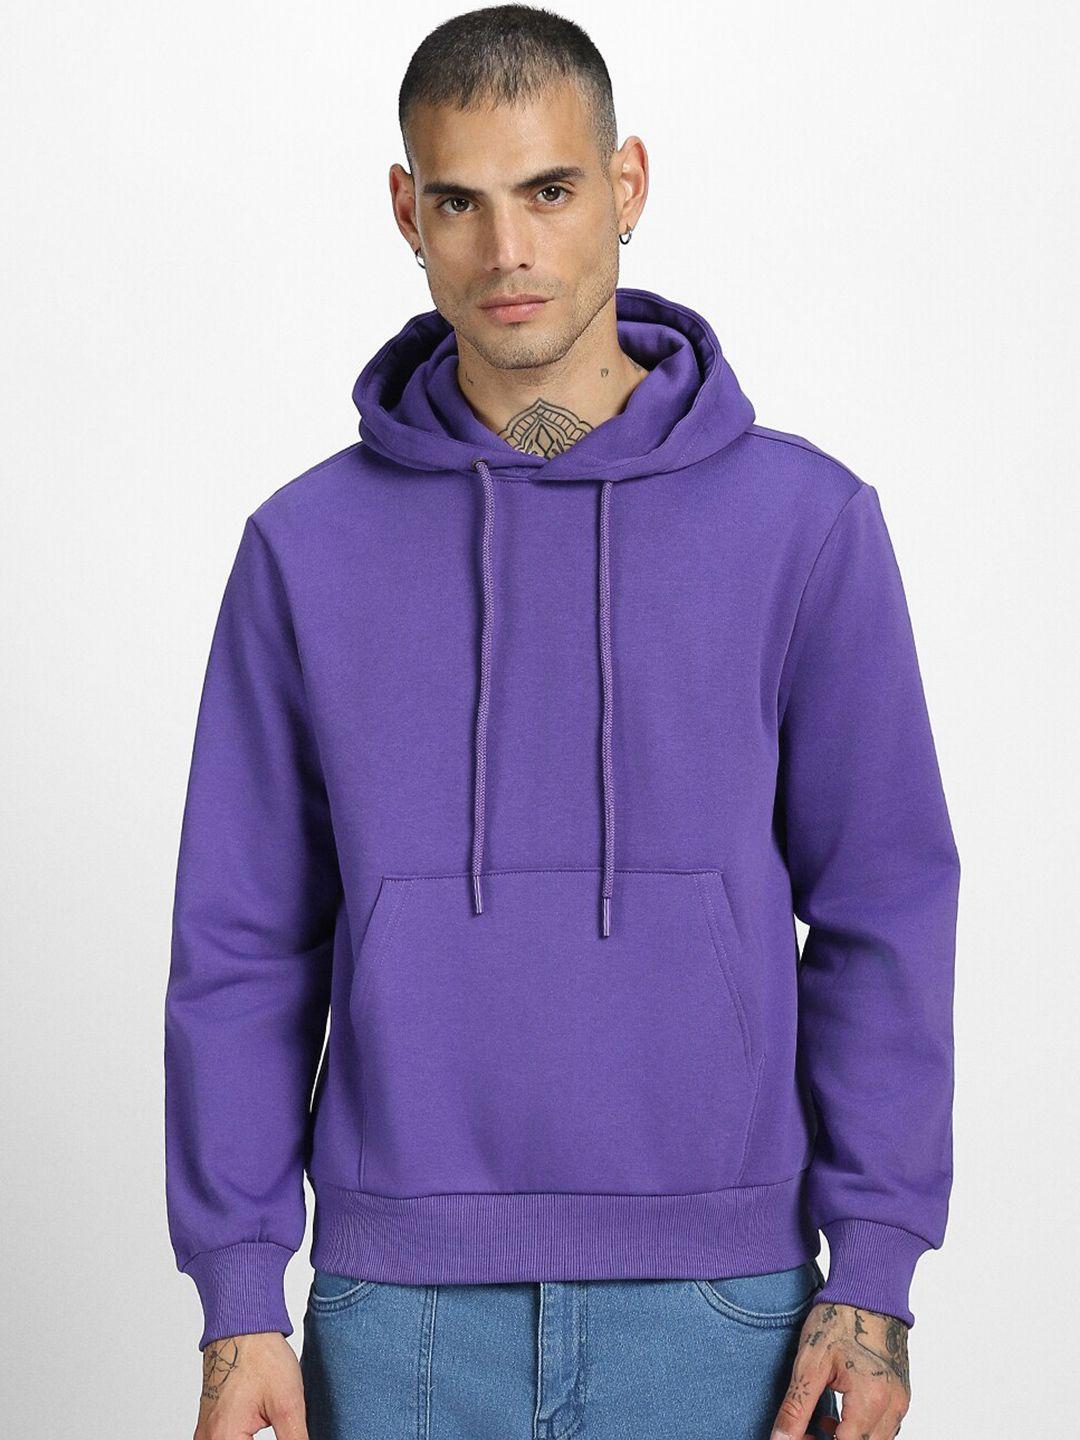 veirdo-purple-hooded-fleece-sweatshirt